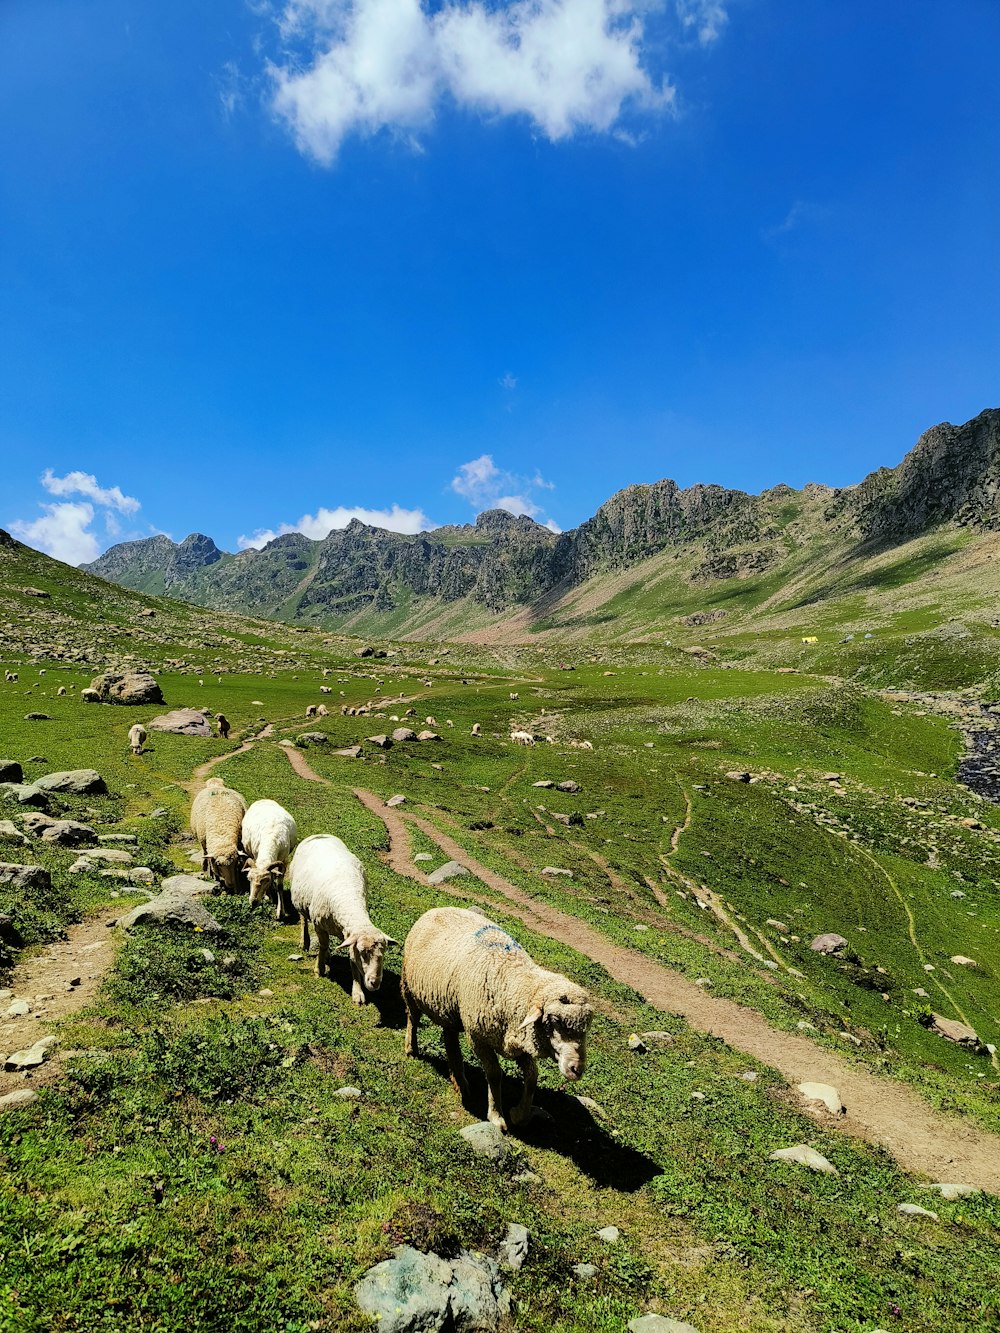 a herd of sheep walking across a lush green hillside